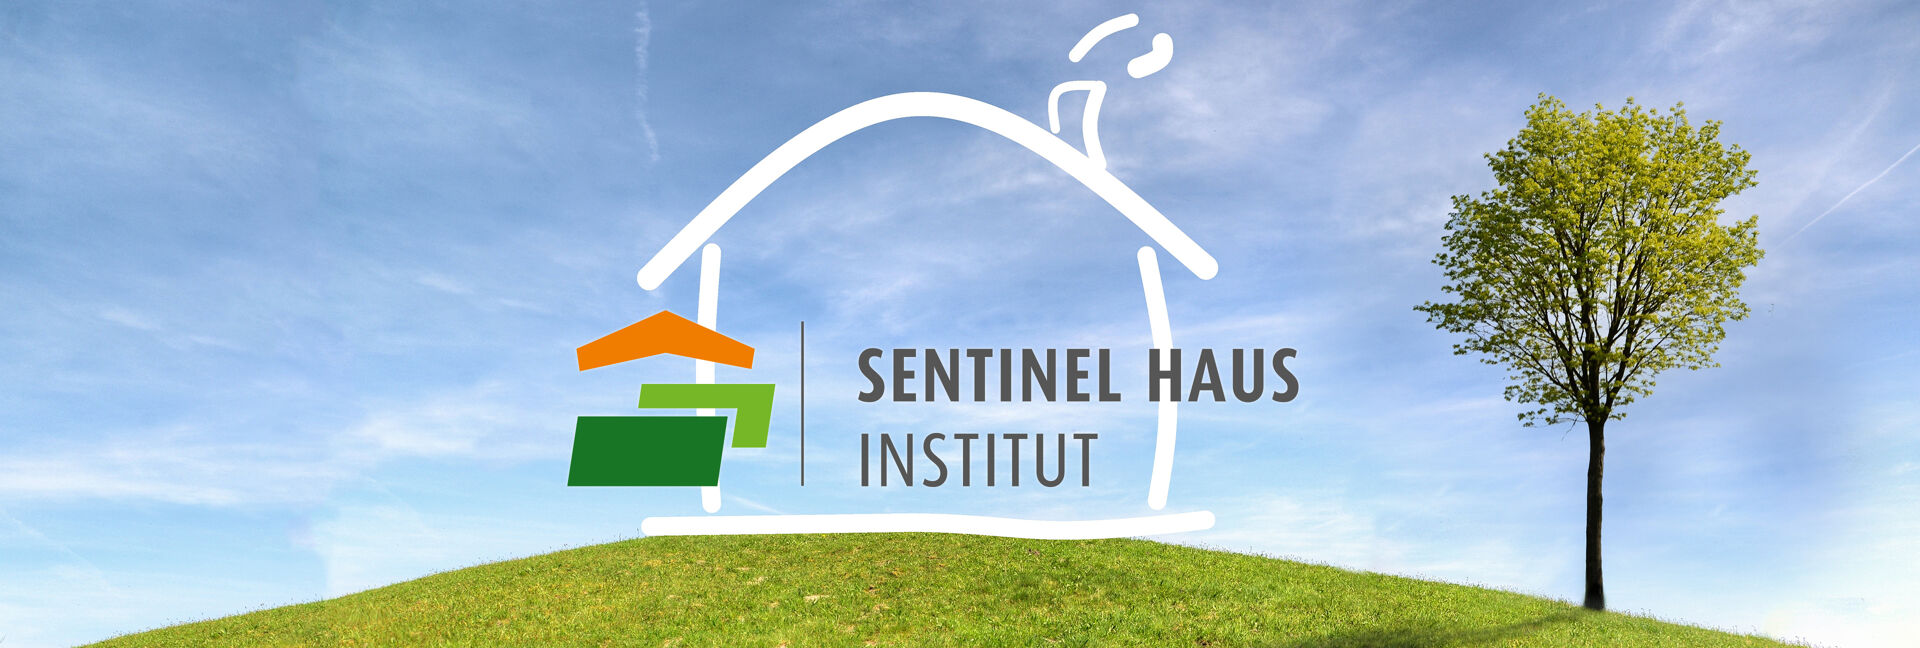 Logo Sentinel Haus Institut für nachhaltiges Bauen